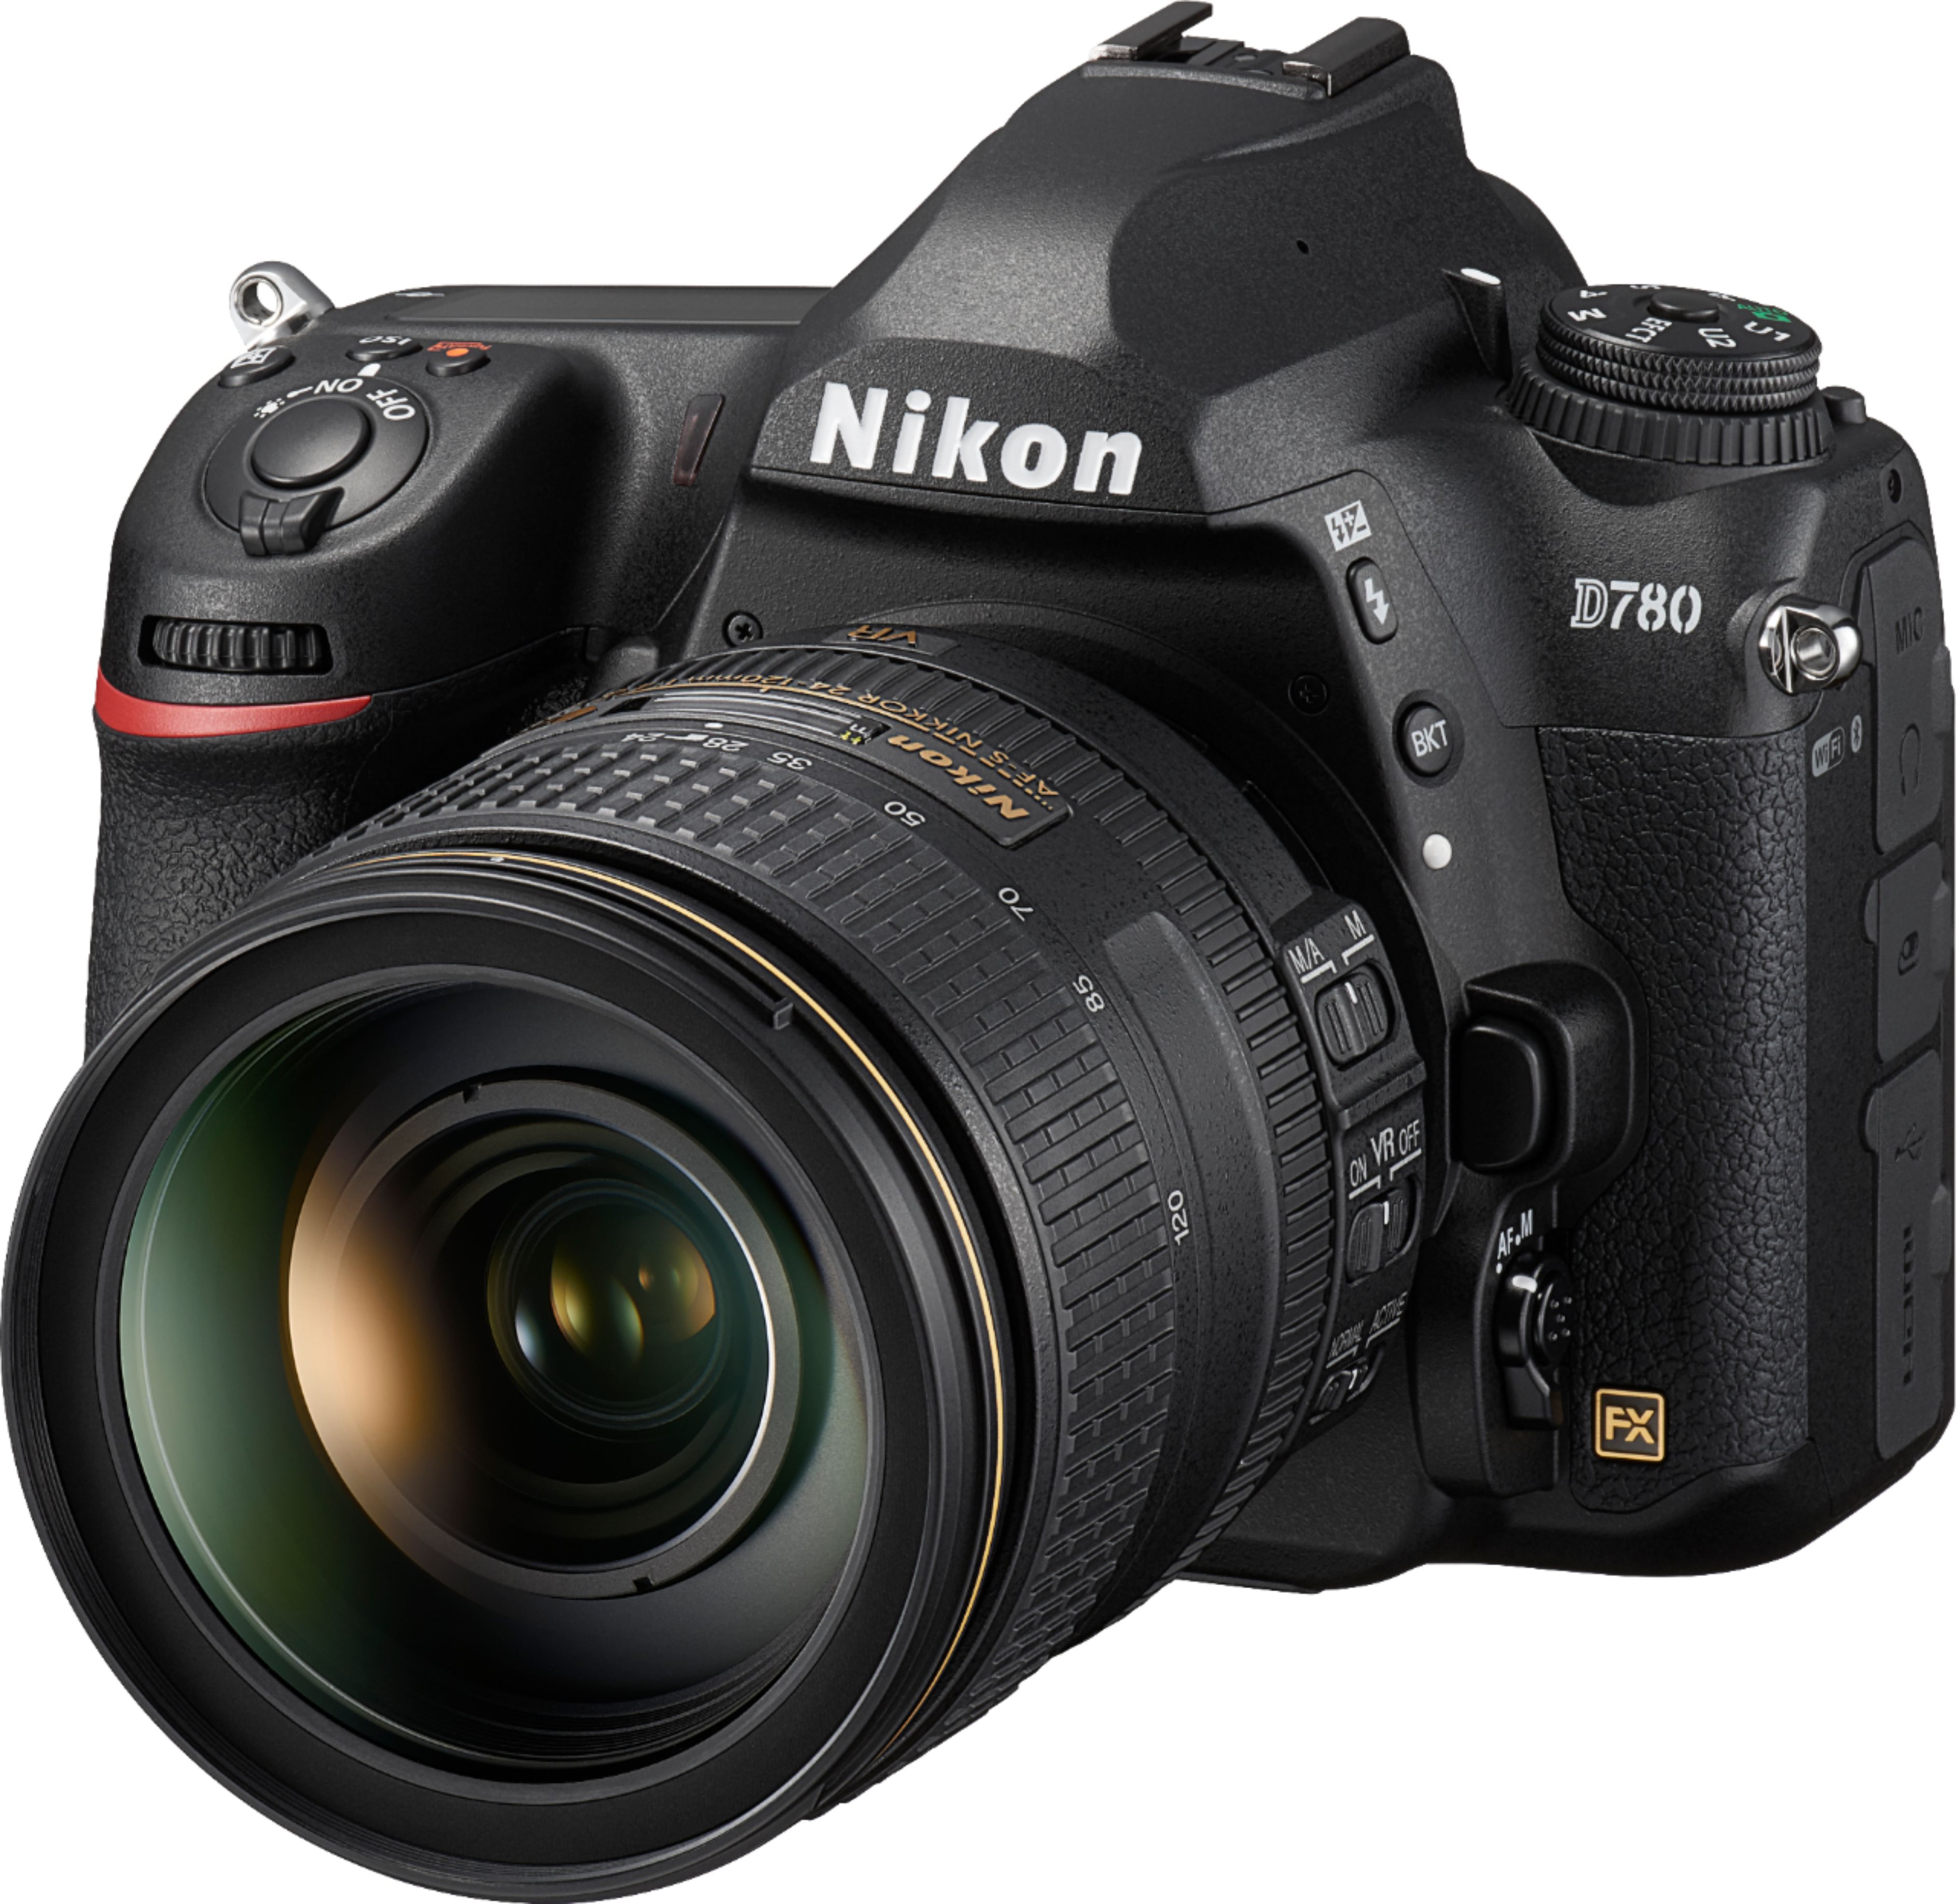 Nikon D780 DSLR 4K Video Camera with 24120mm Lens Black 1619 Best Buy